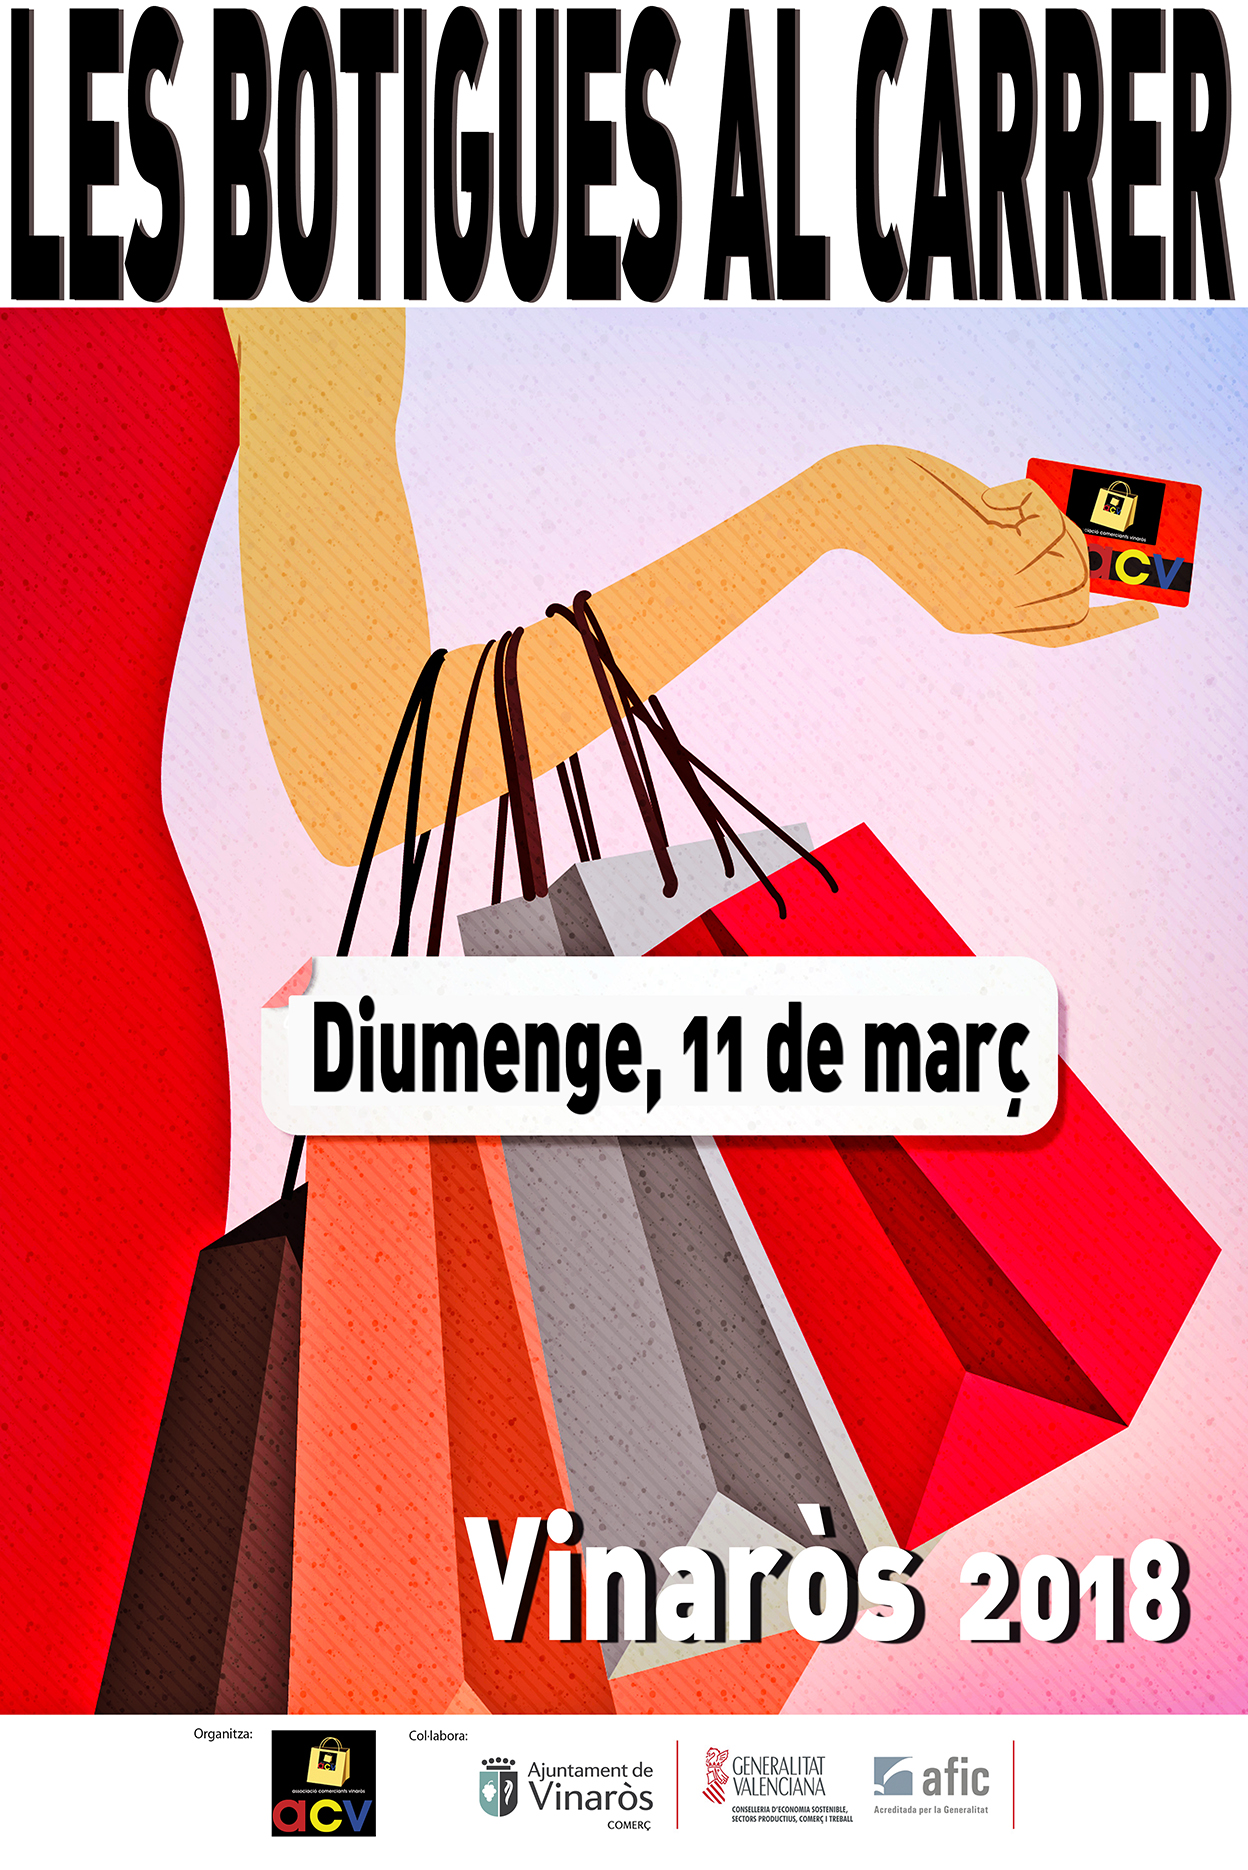 Vinaròs celebrarà diumenge 11 de març una nova edició de Botigues al Carrer